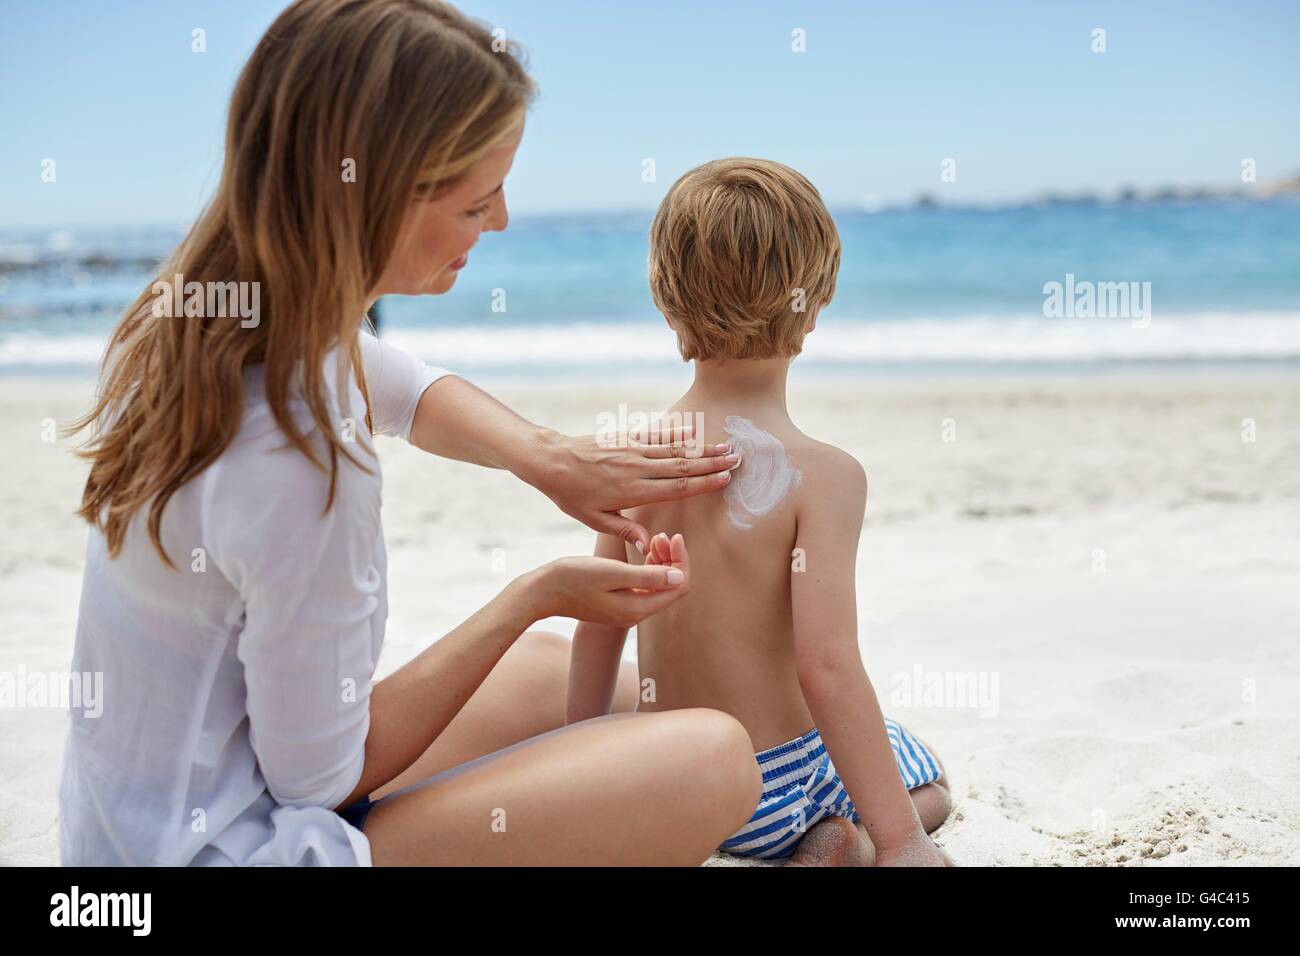 Modelo liberado. Madre aplicar crema solar a su hijo en la playa. Foto de stock